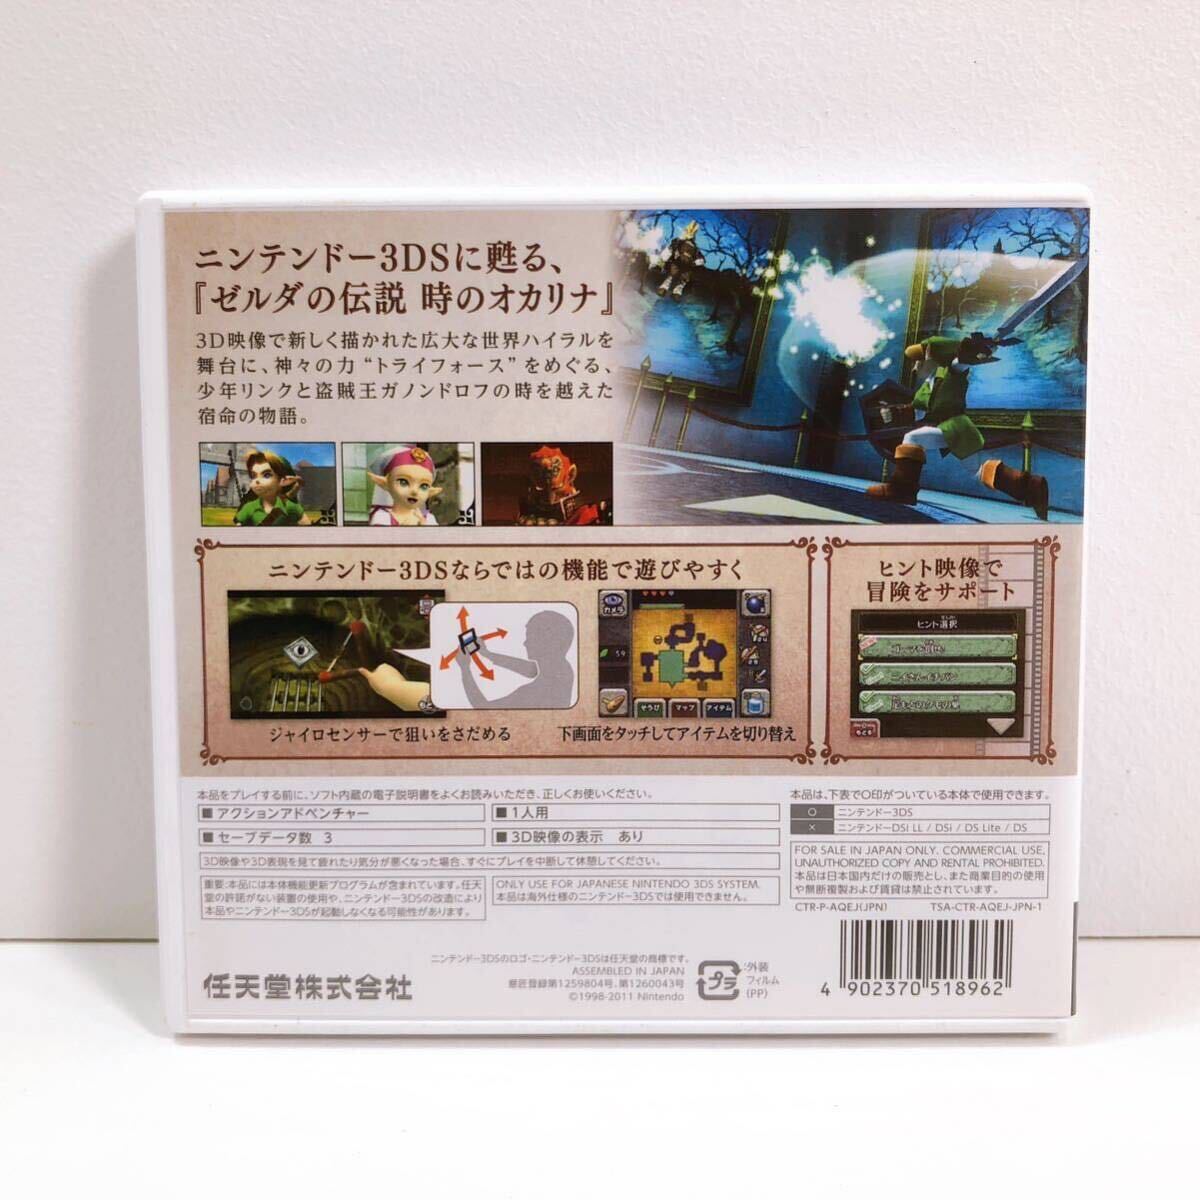 103【中古】Nintendo 3DS ゼルダの伝説 時のオカリナ3D 任天堂 ニンテンドー 3DS専用ソフト任天堂 ゲーム 現状品_画像2